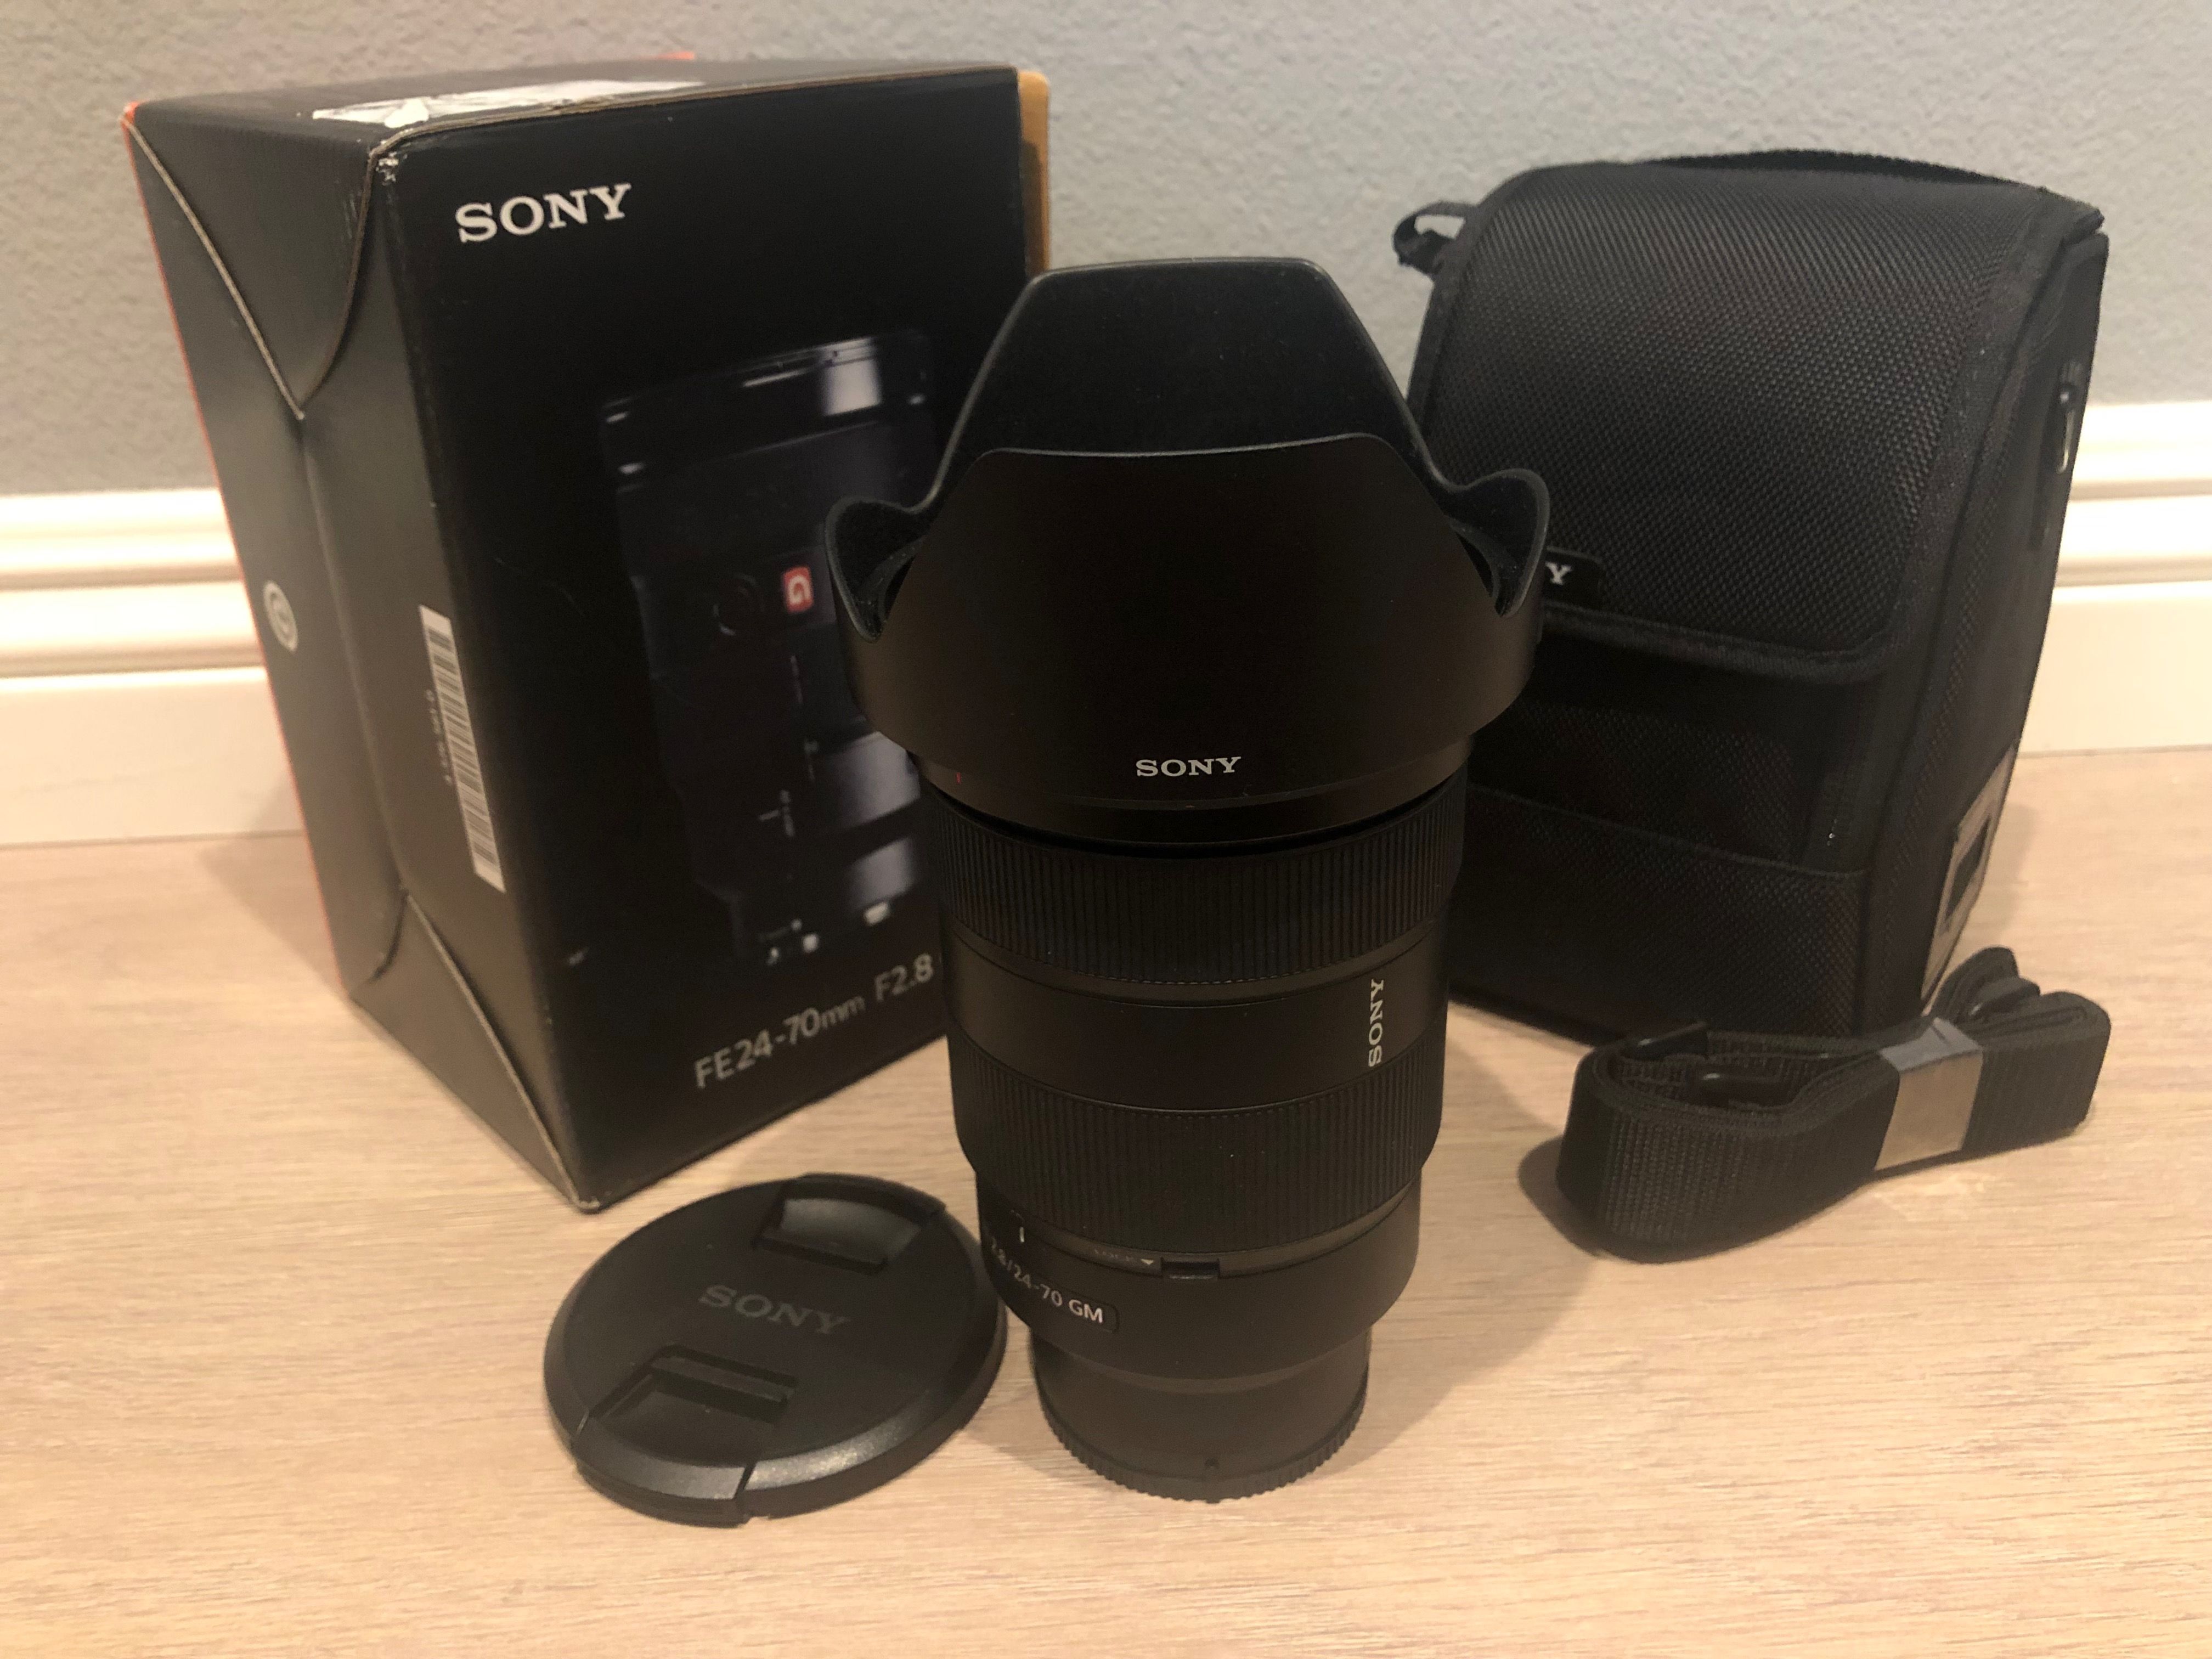 Sony FE 24-70mm GM (G-Master) f/2.8 Camera Lens